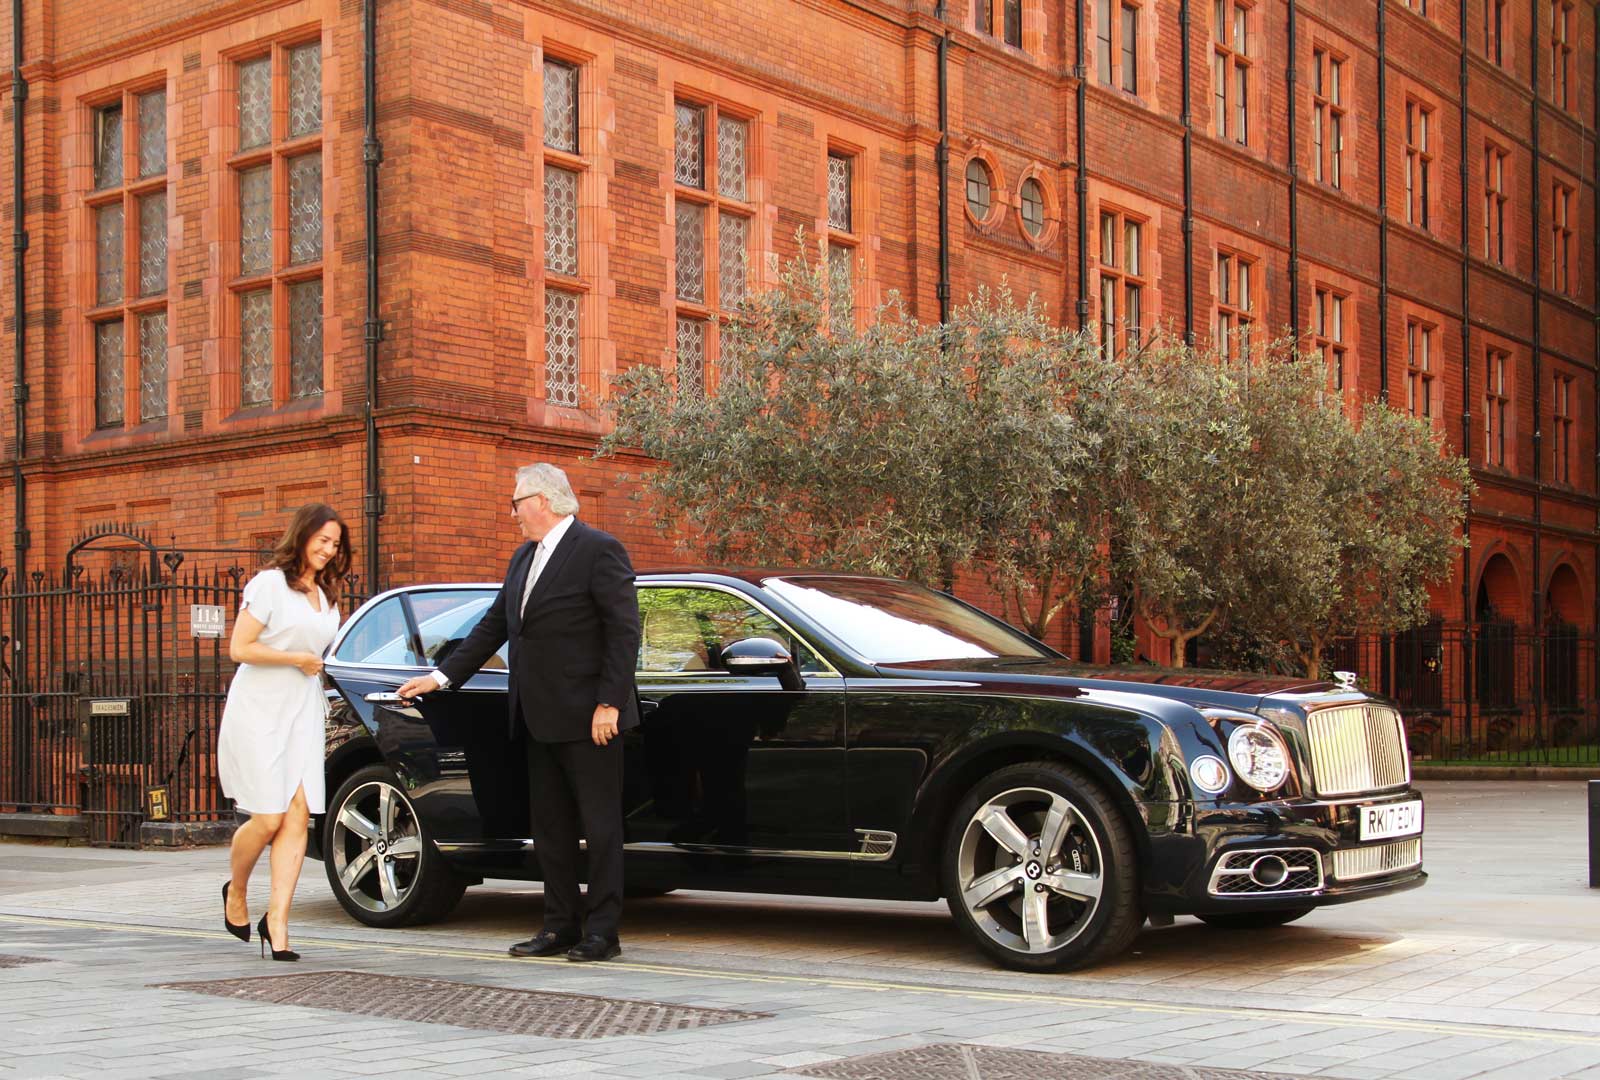 Chauffeur driven Bentley in London